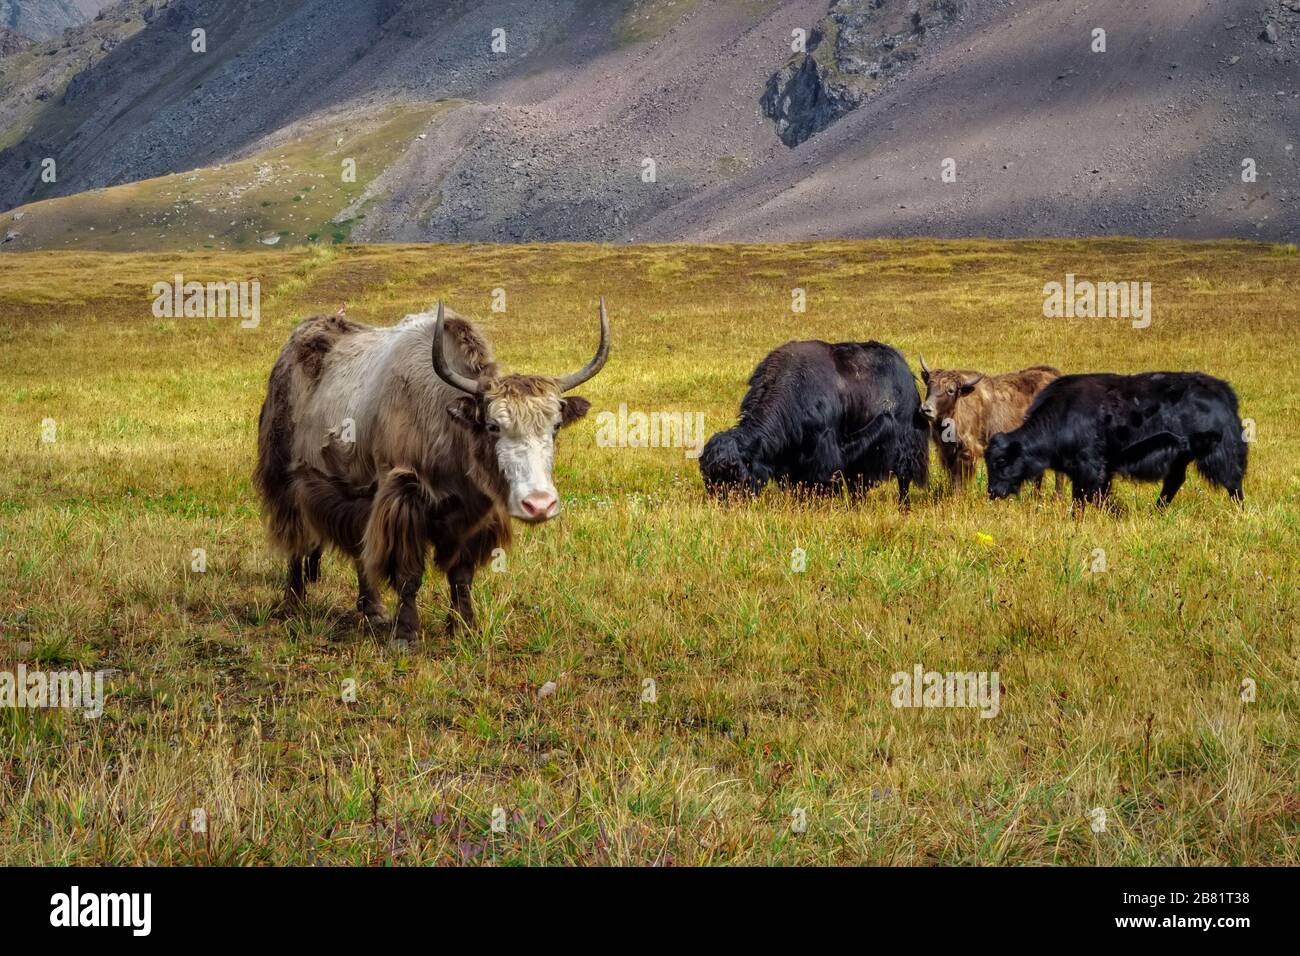 Vache Yak-tibétaine. Les chênes se délaissent dans une vallée de montagne. Yak est une ferme d caravane au Népal et au Tibet Banque D'Images